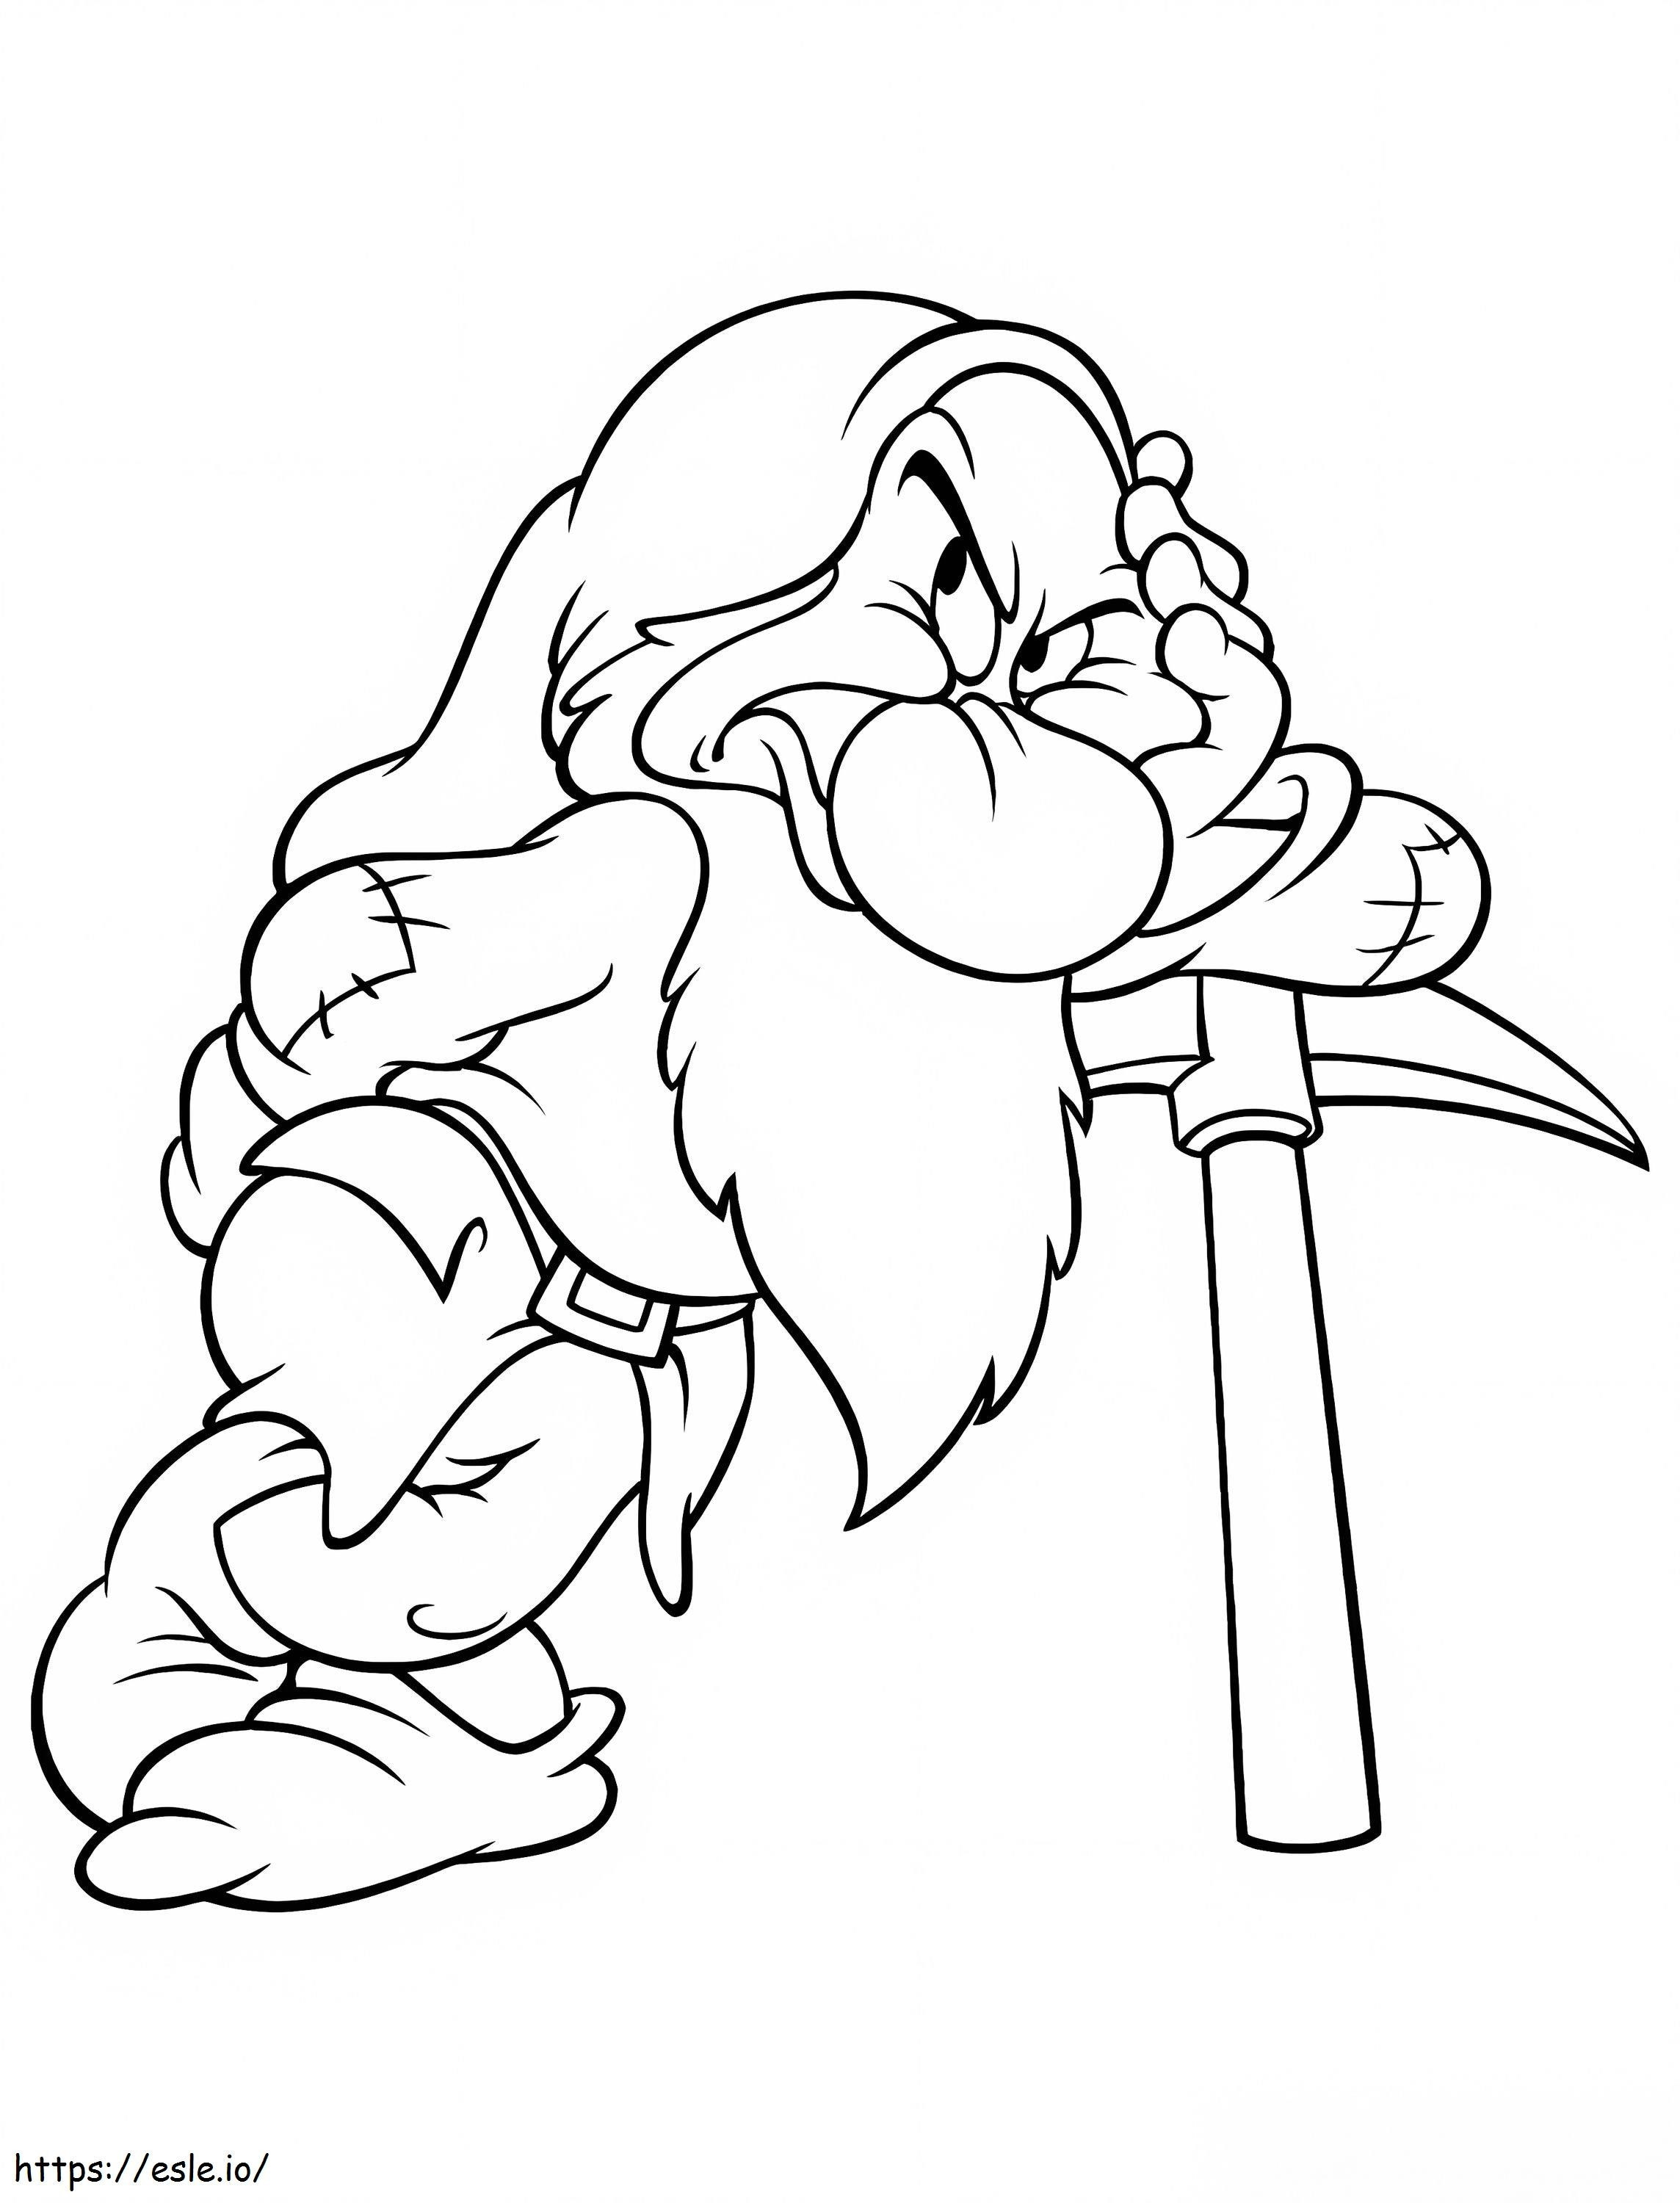 Grumpy Dwarf 3 coloring page